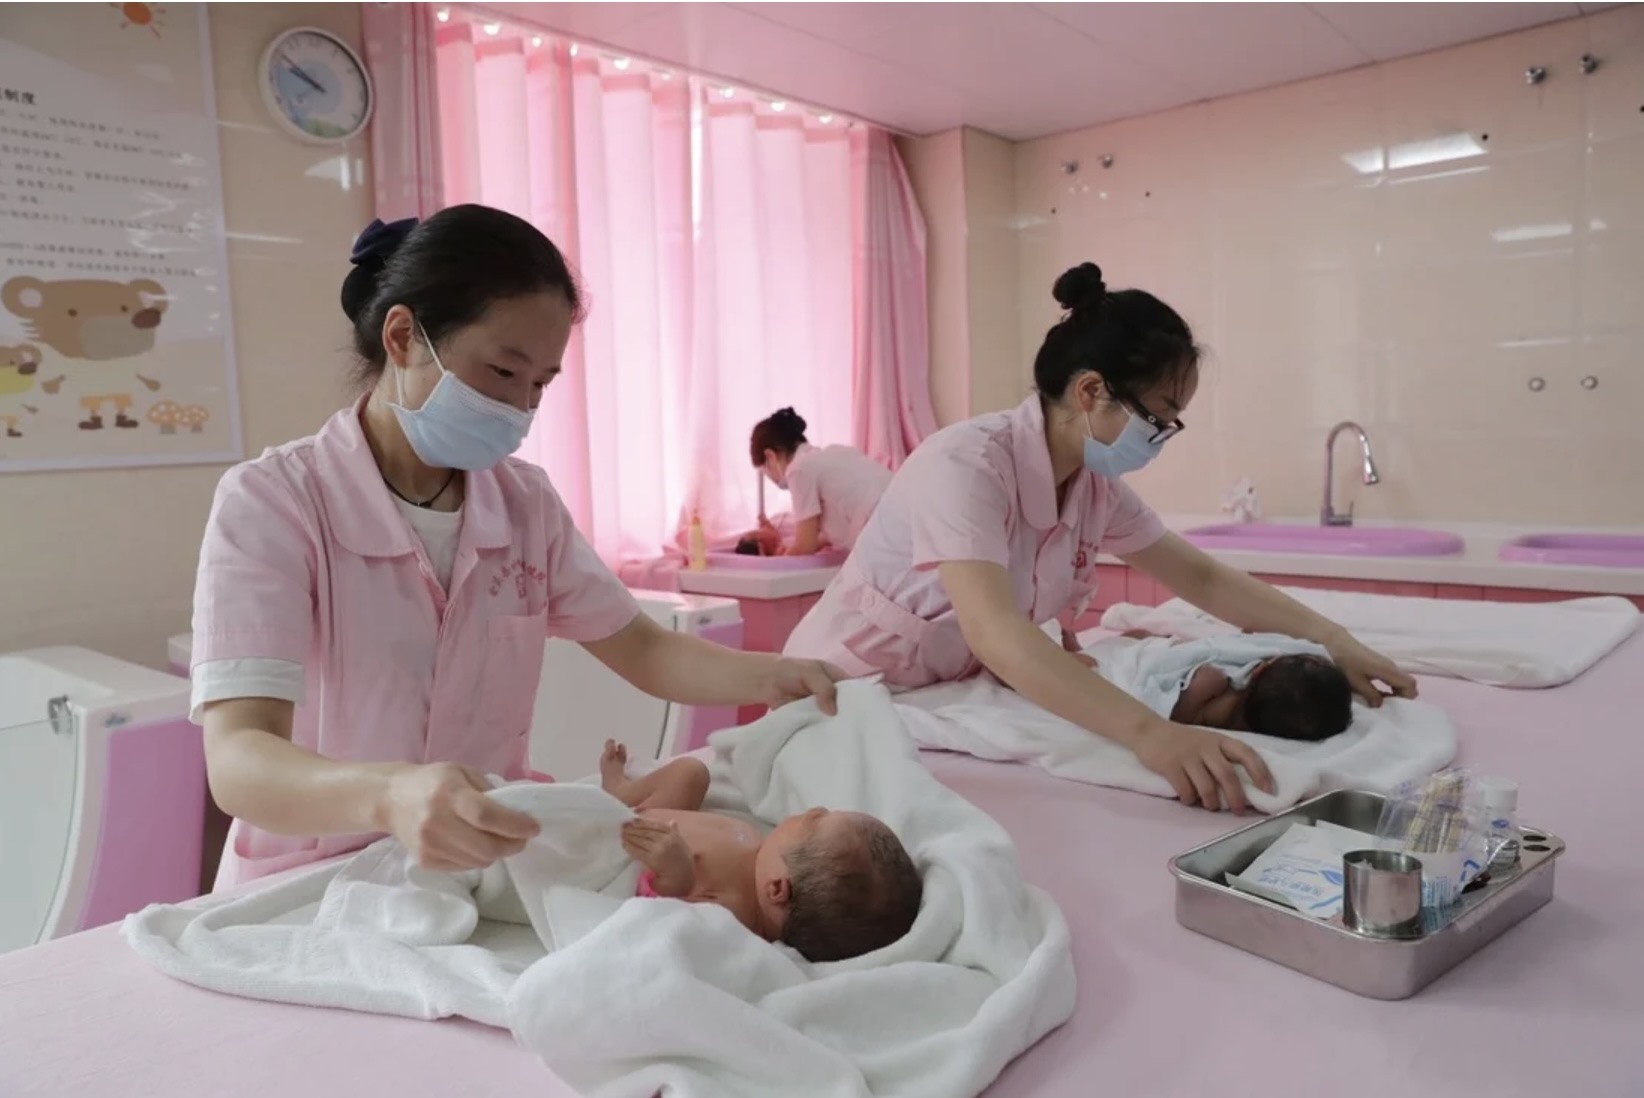 Trung Quốc, lần đầu chứng kiến ​​dân số giảm sau 60 năm, gần đây đã triển khai các chính sách khuyến khích sinh con. Ảnh: Xinhua